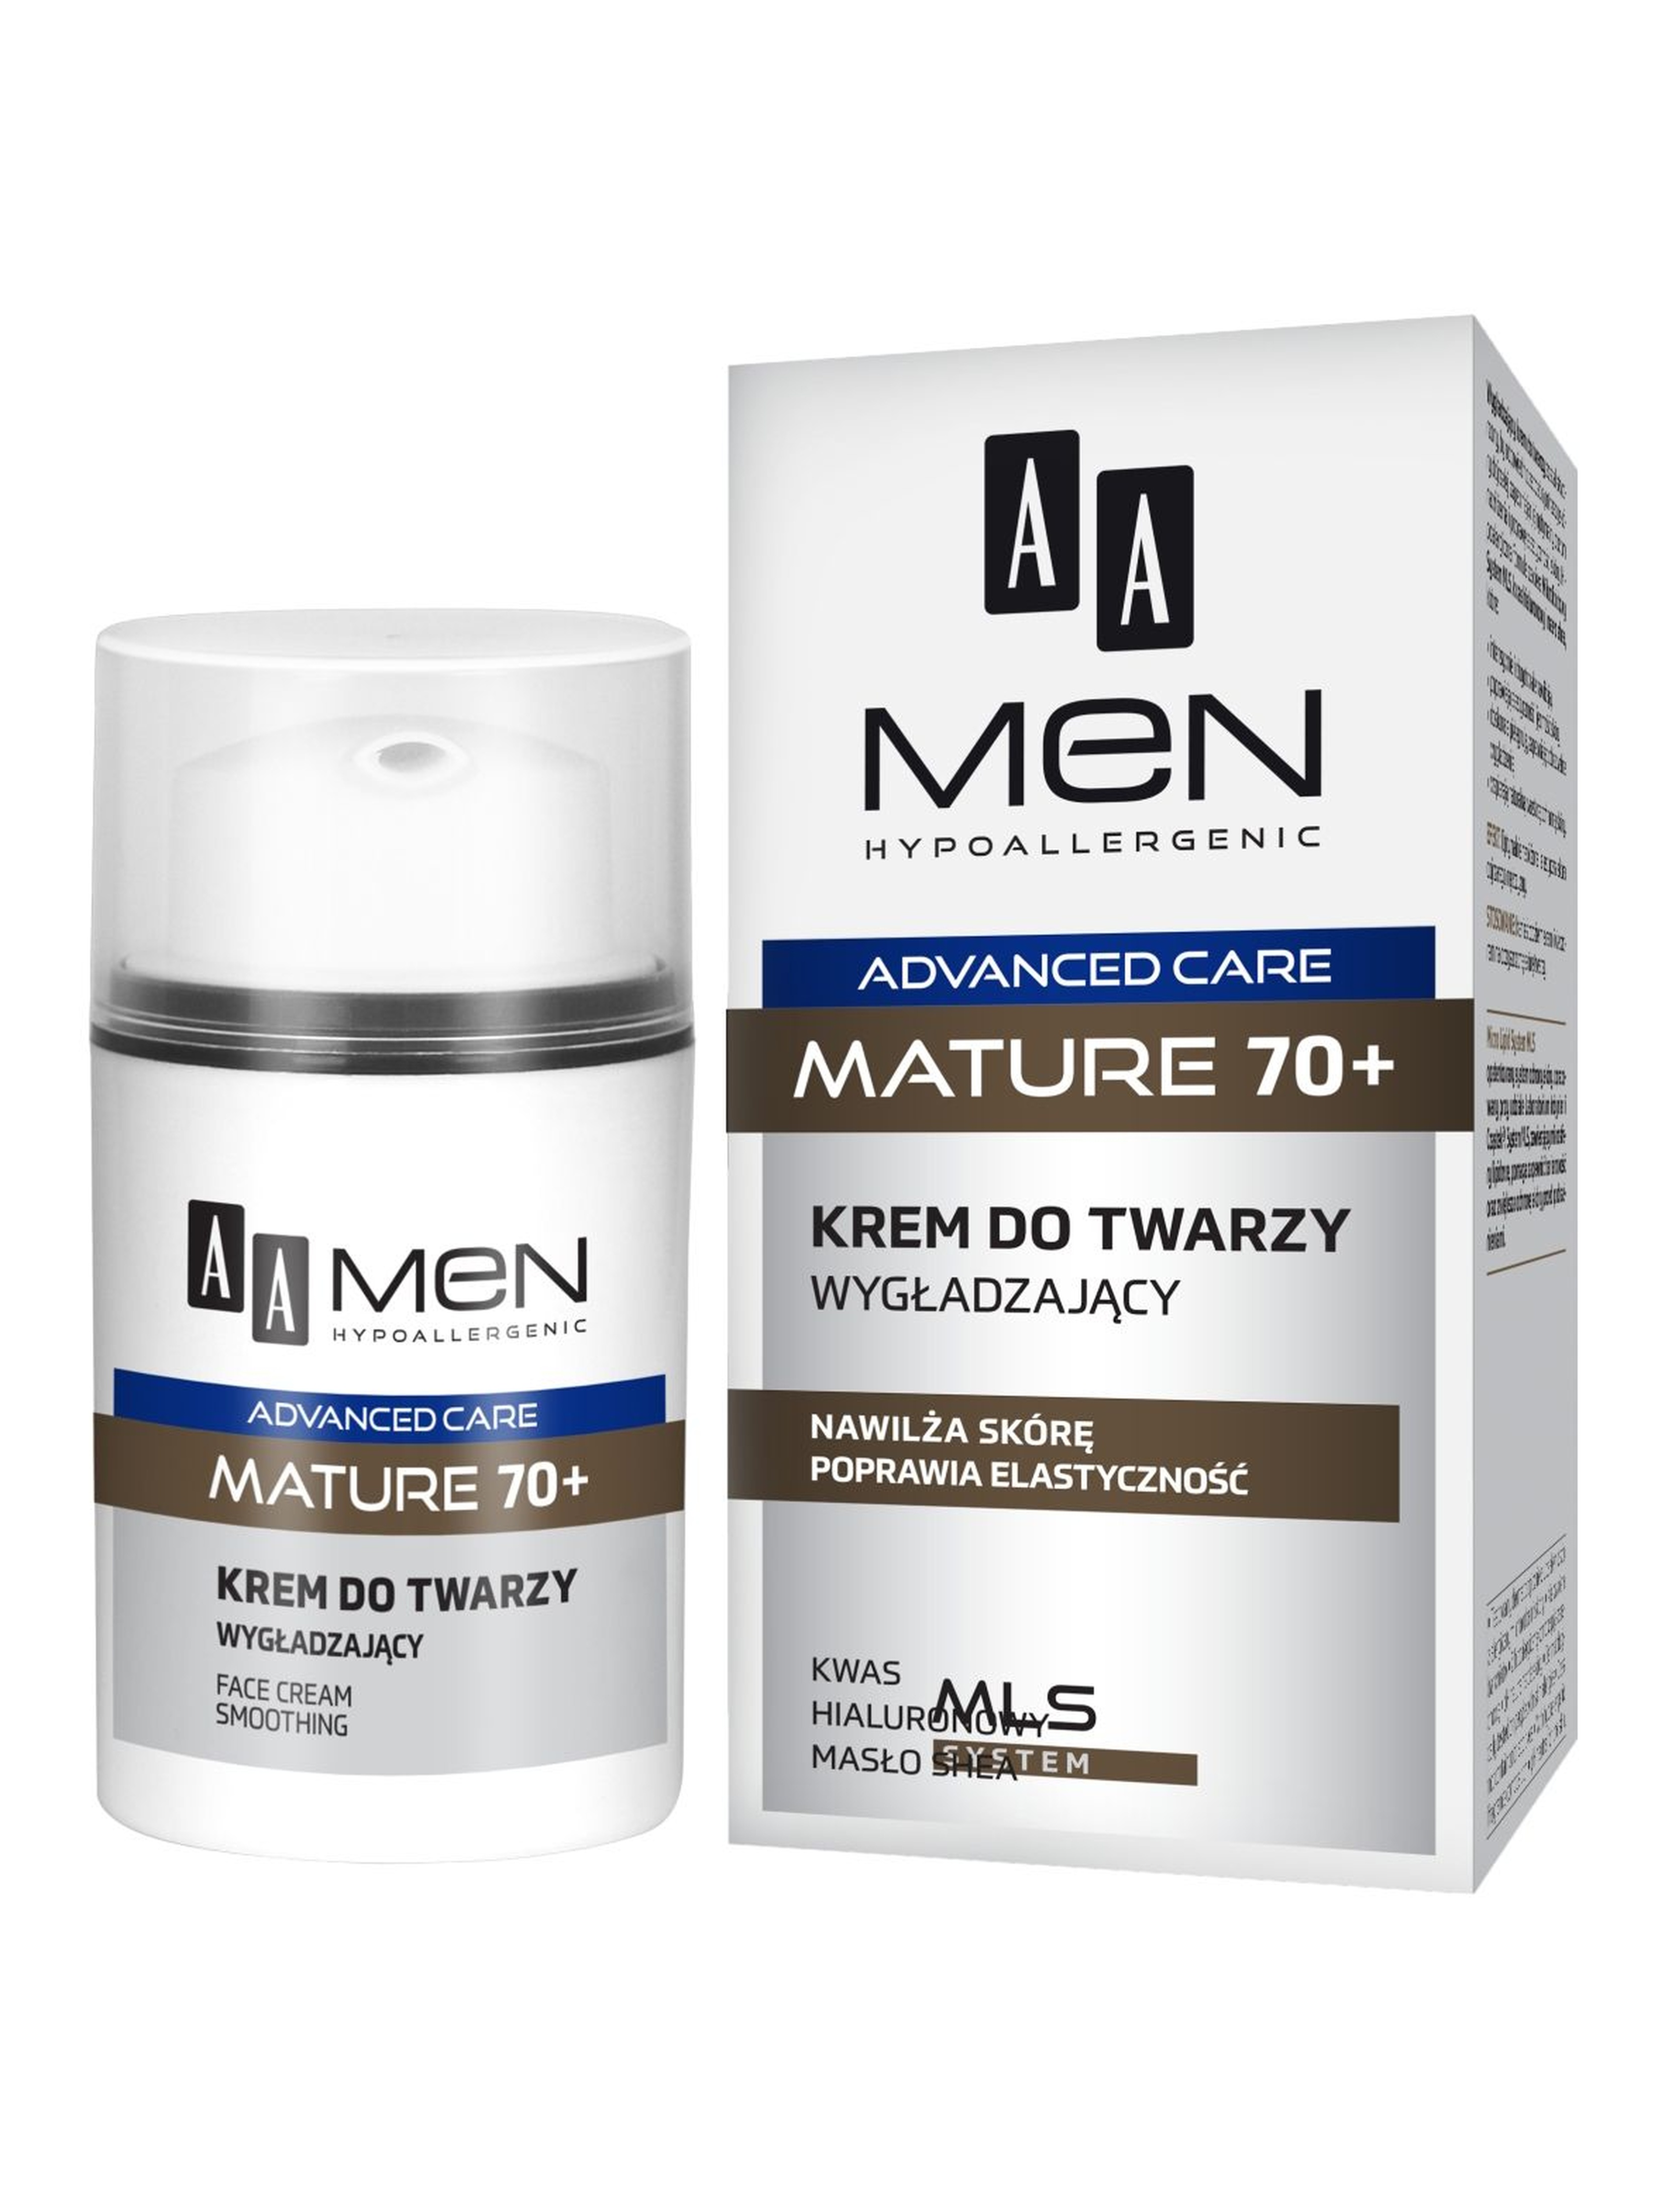 AA Men Advanced Care Mature 70+ Krem do twarzy wygładzający 50 ml